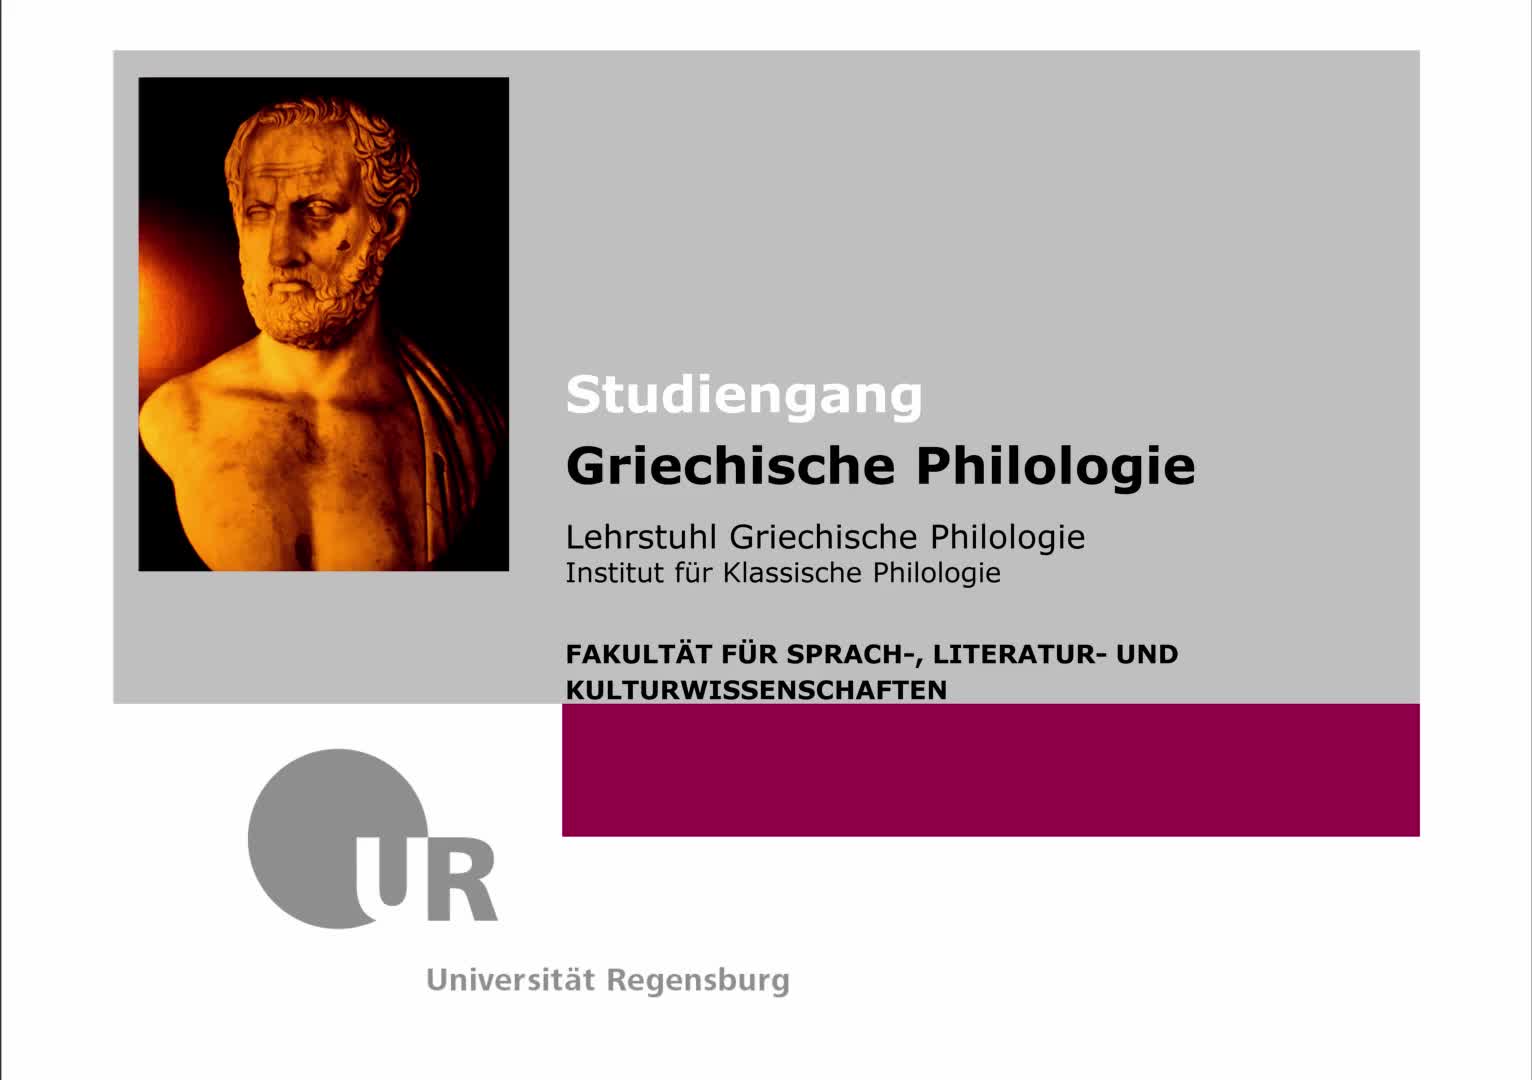 Studiengang Griechische Philologie